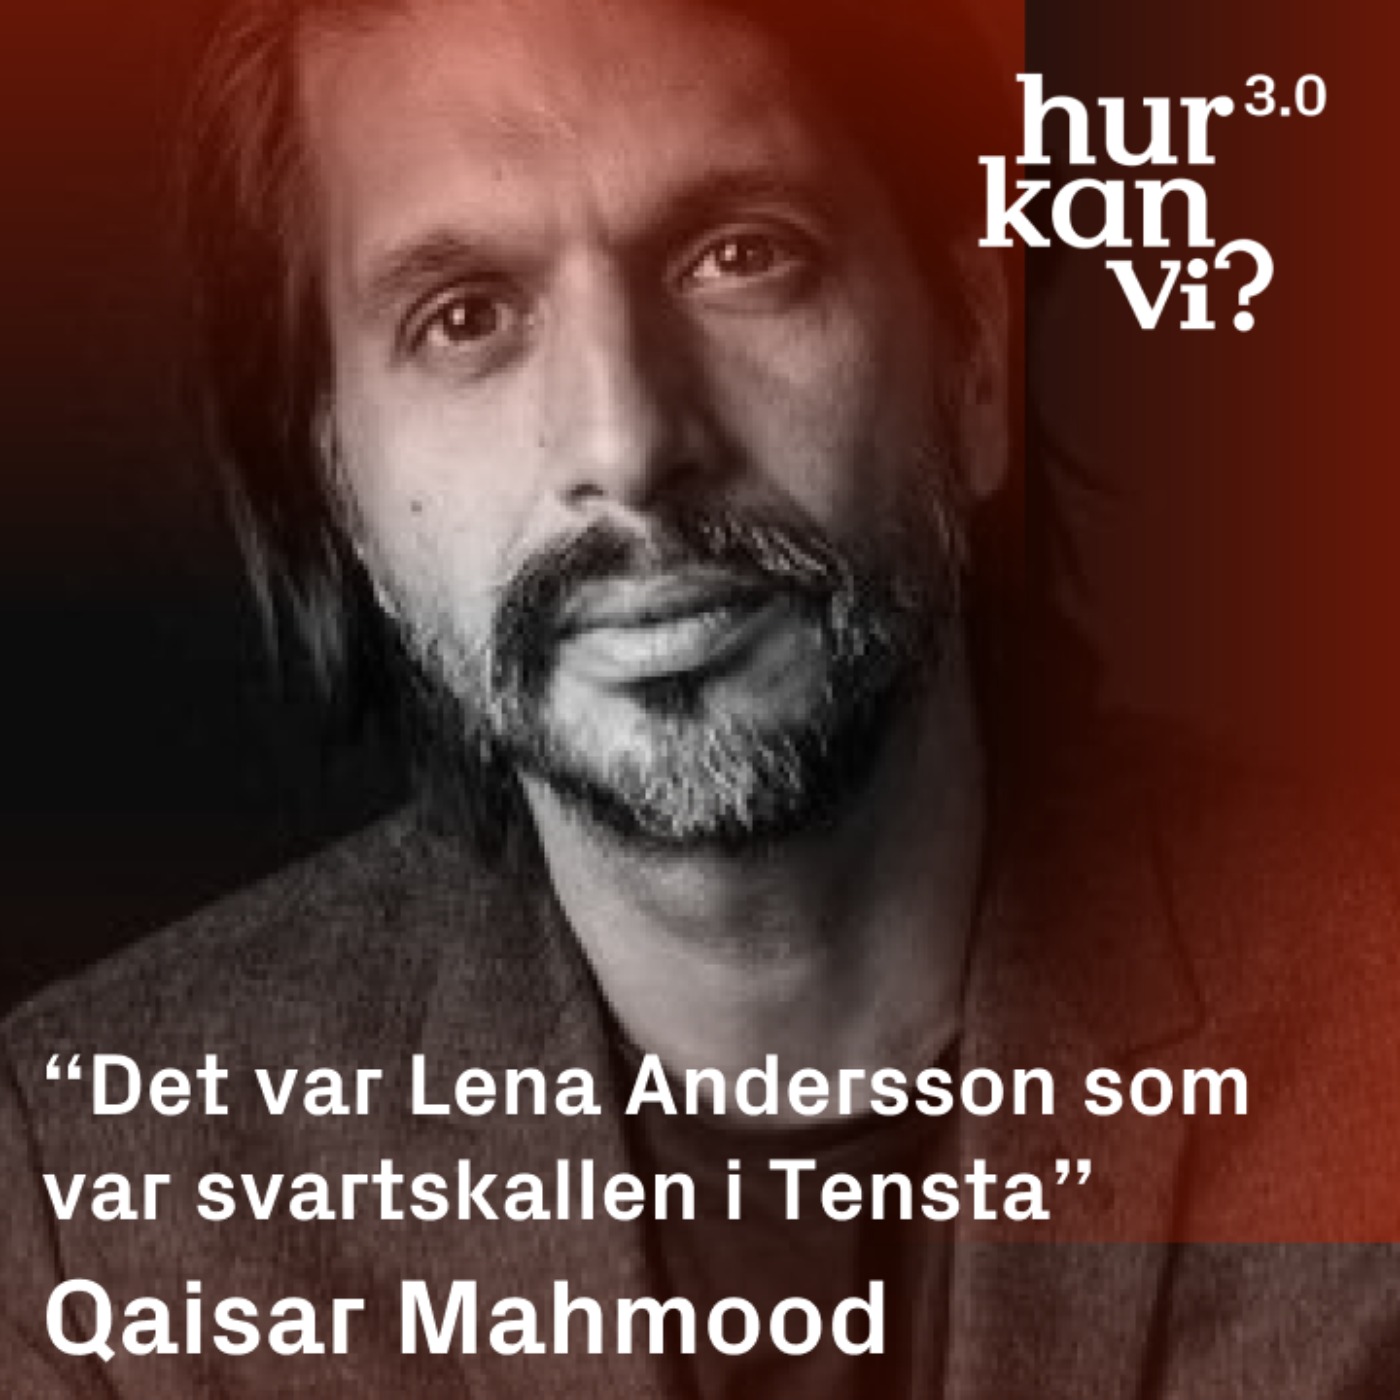 Qaisar Mahmood - “Det var Lena Andersson som var svartskallen i Tensta”